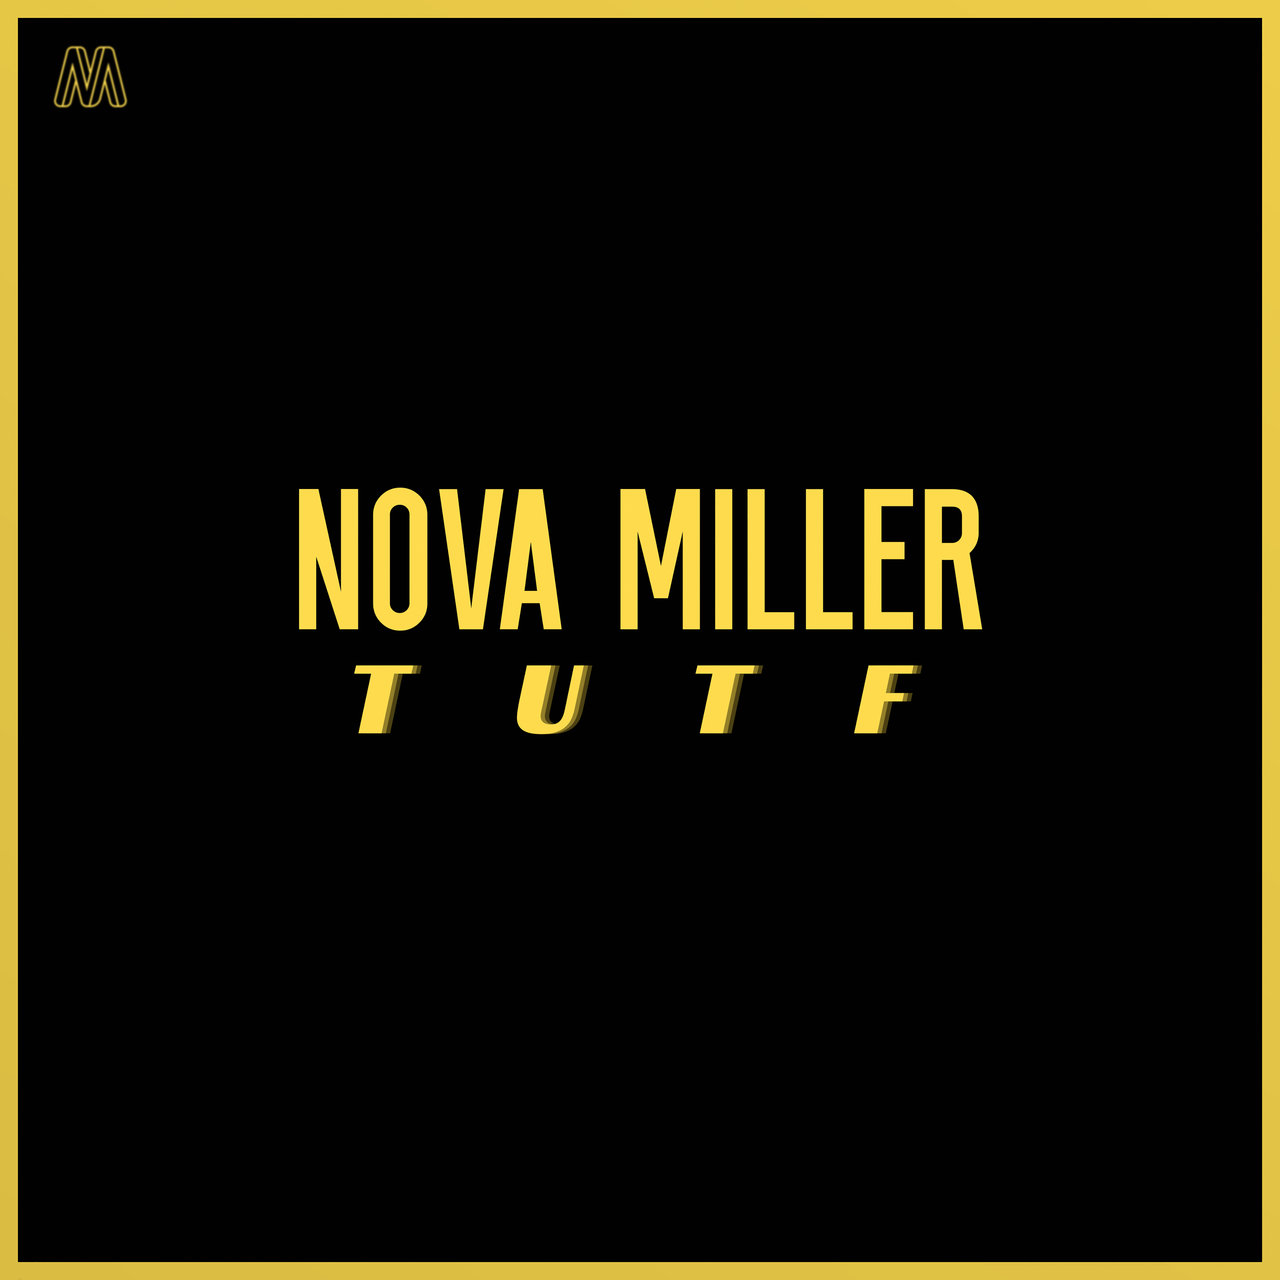 Nova Miller — TUTF cover artwork